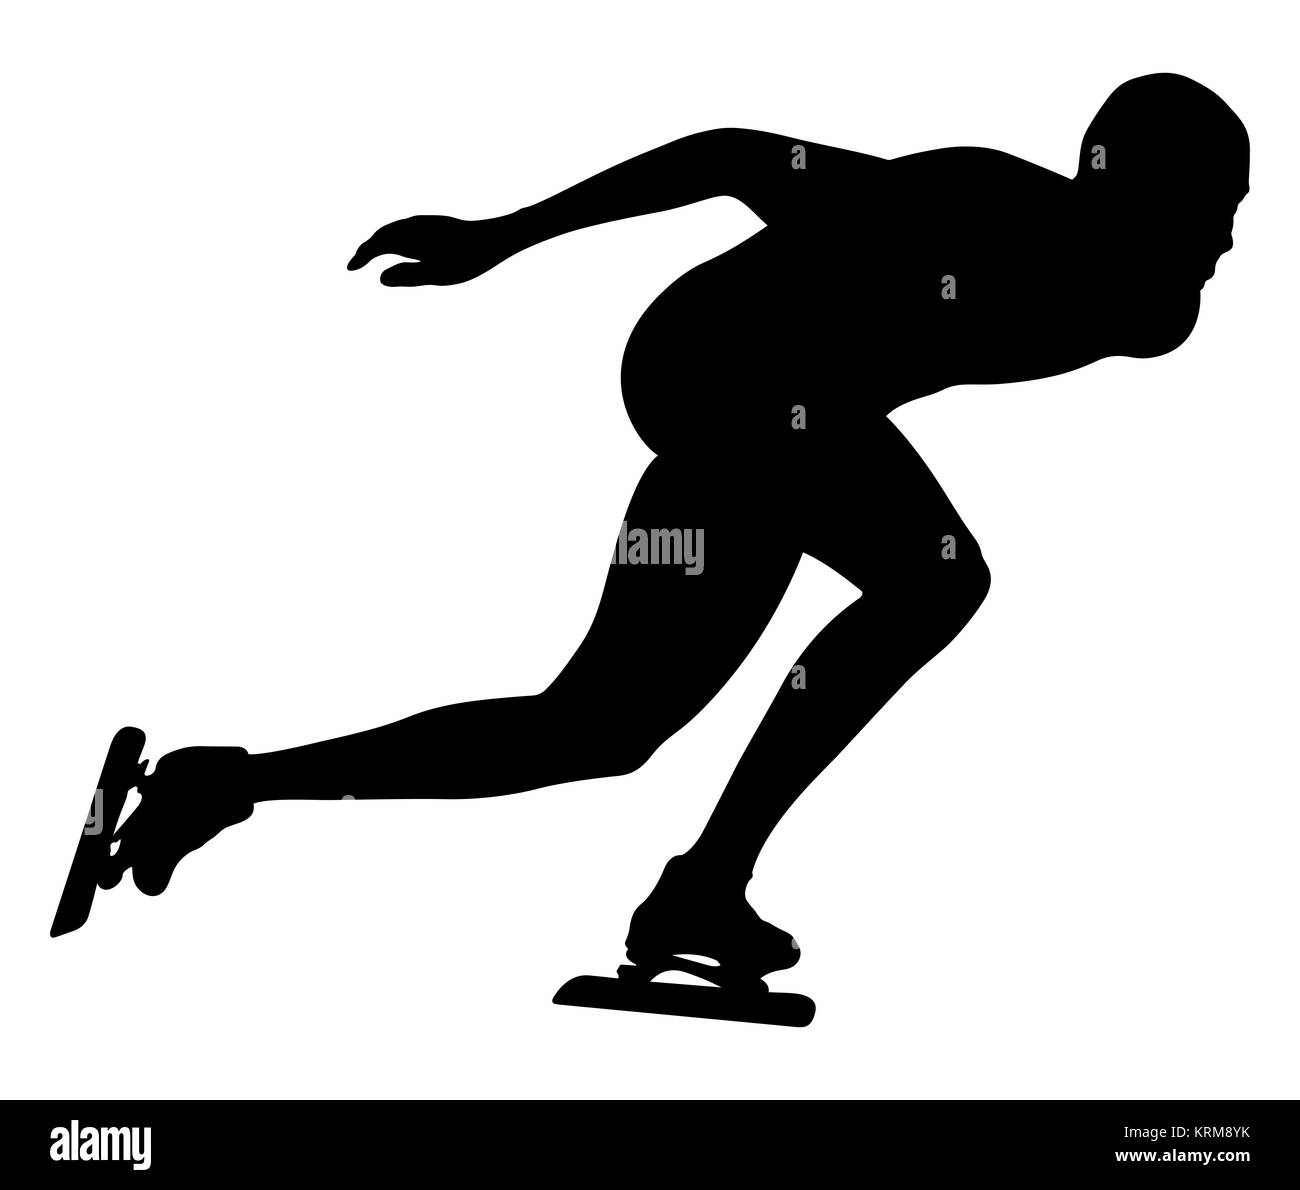 vector illustration athlete speed skater black silhouette Stock Photo